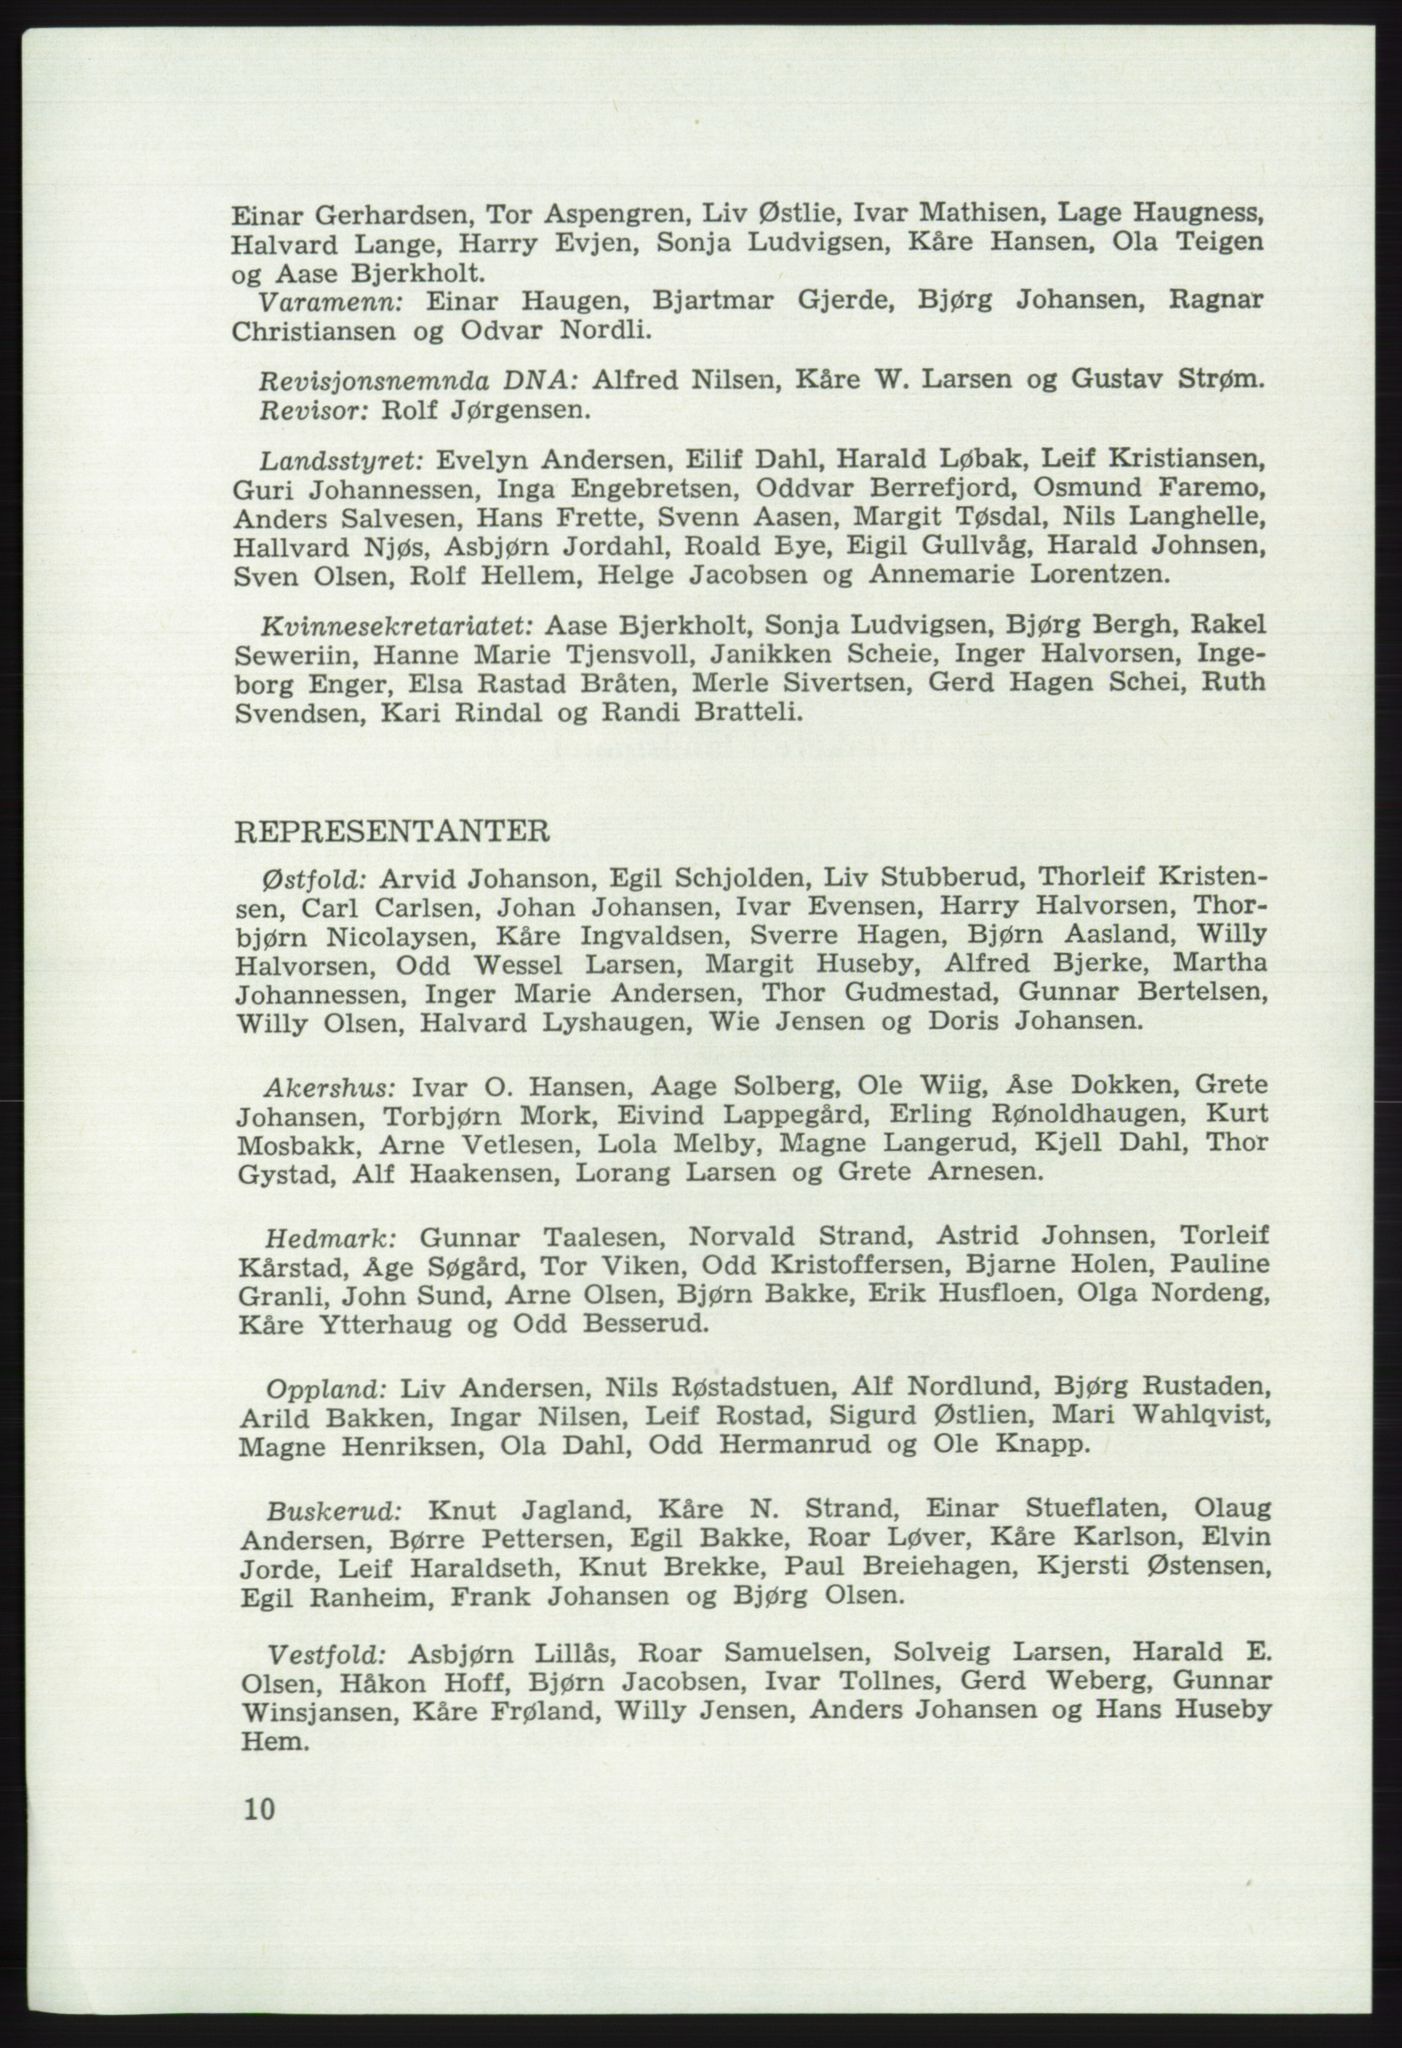 Det norske Arbeiderparti - publikasjoner, AAB/-/-/-: Protokoll over forhandlingene på det 41. ordinære landsmøte 21.-23. mai 1967 i Oslo, 1967, s. 10